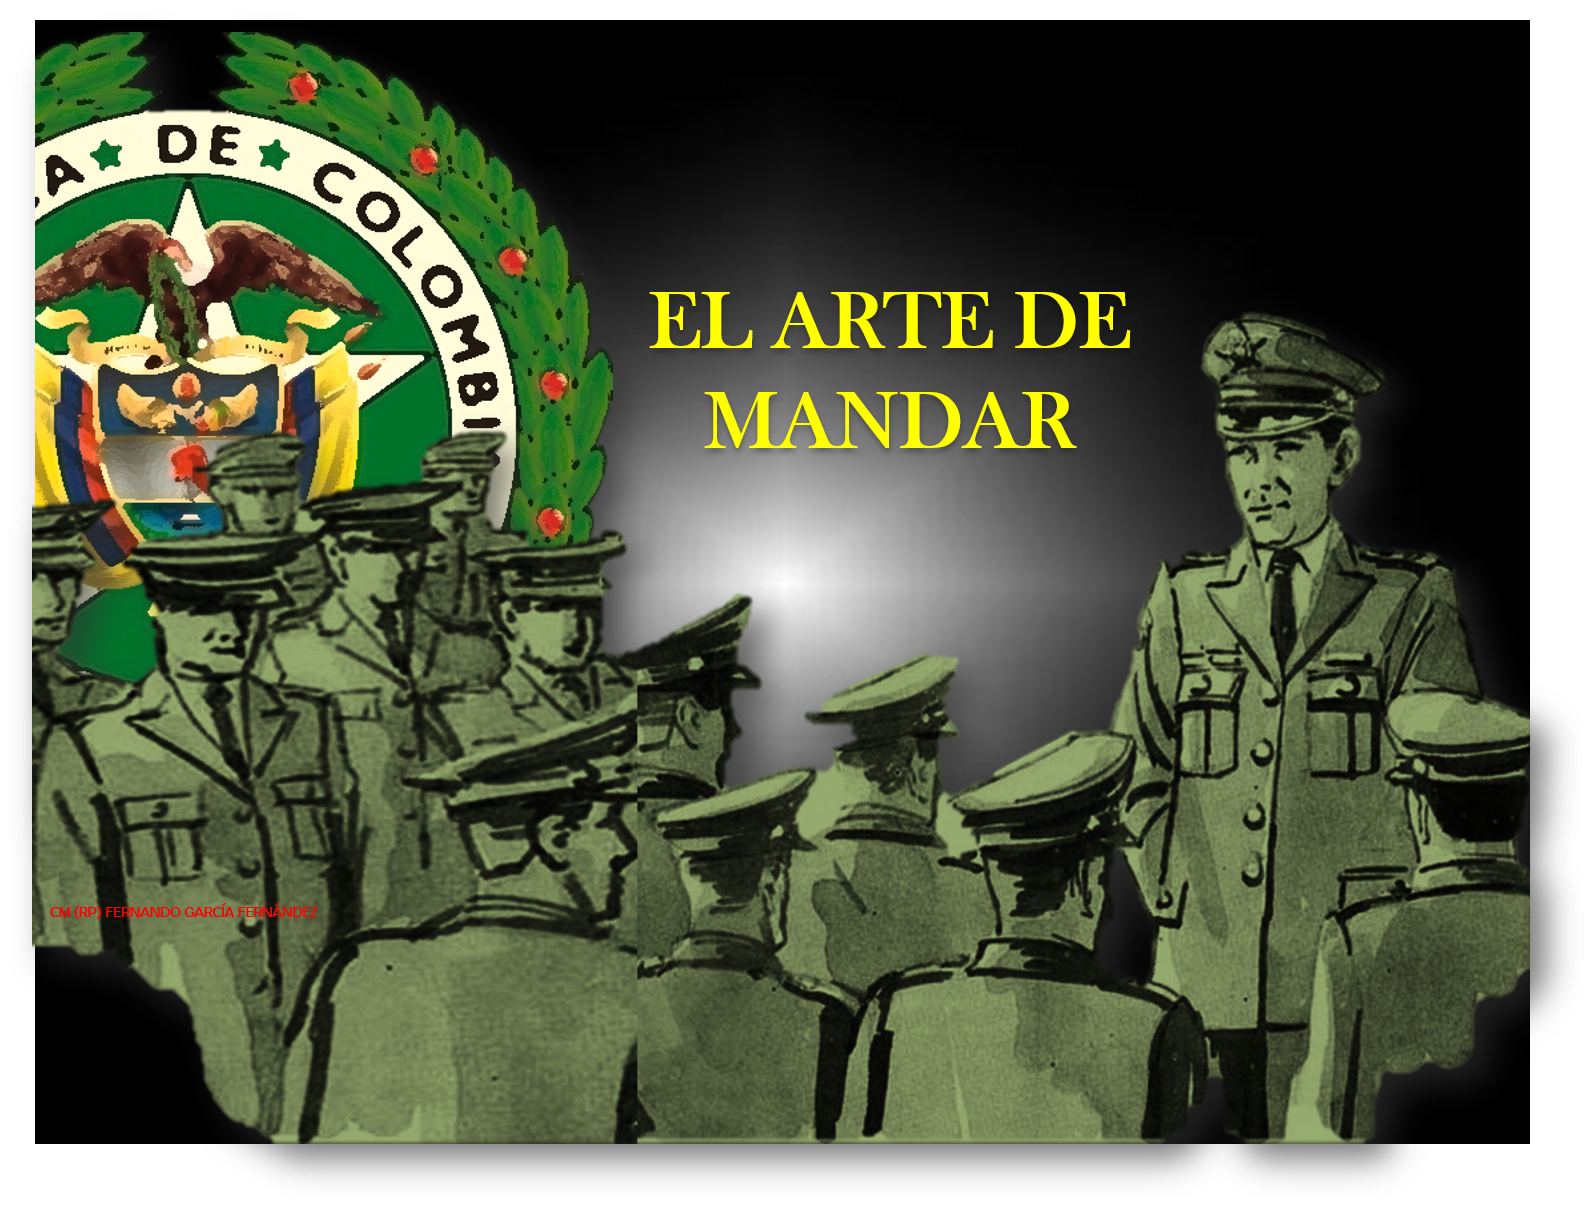 Momentos de historia de la Policía Nacional de Colombia : Historia